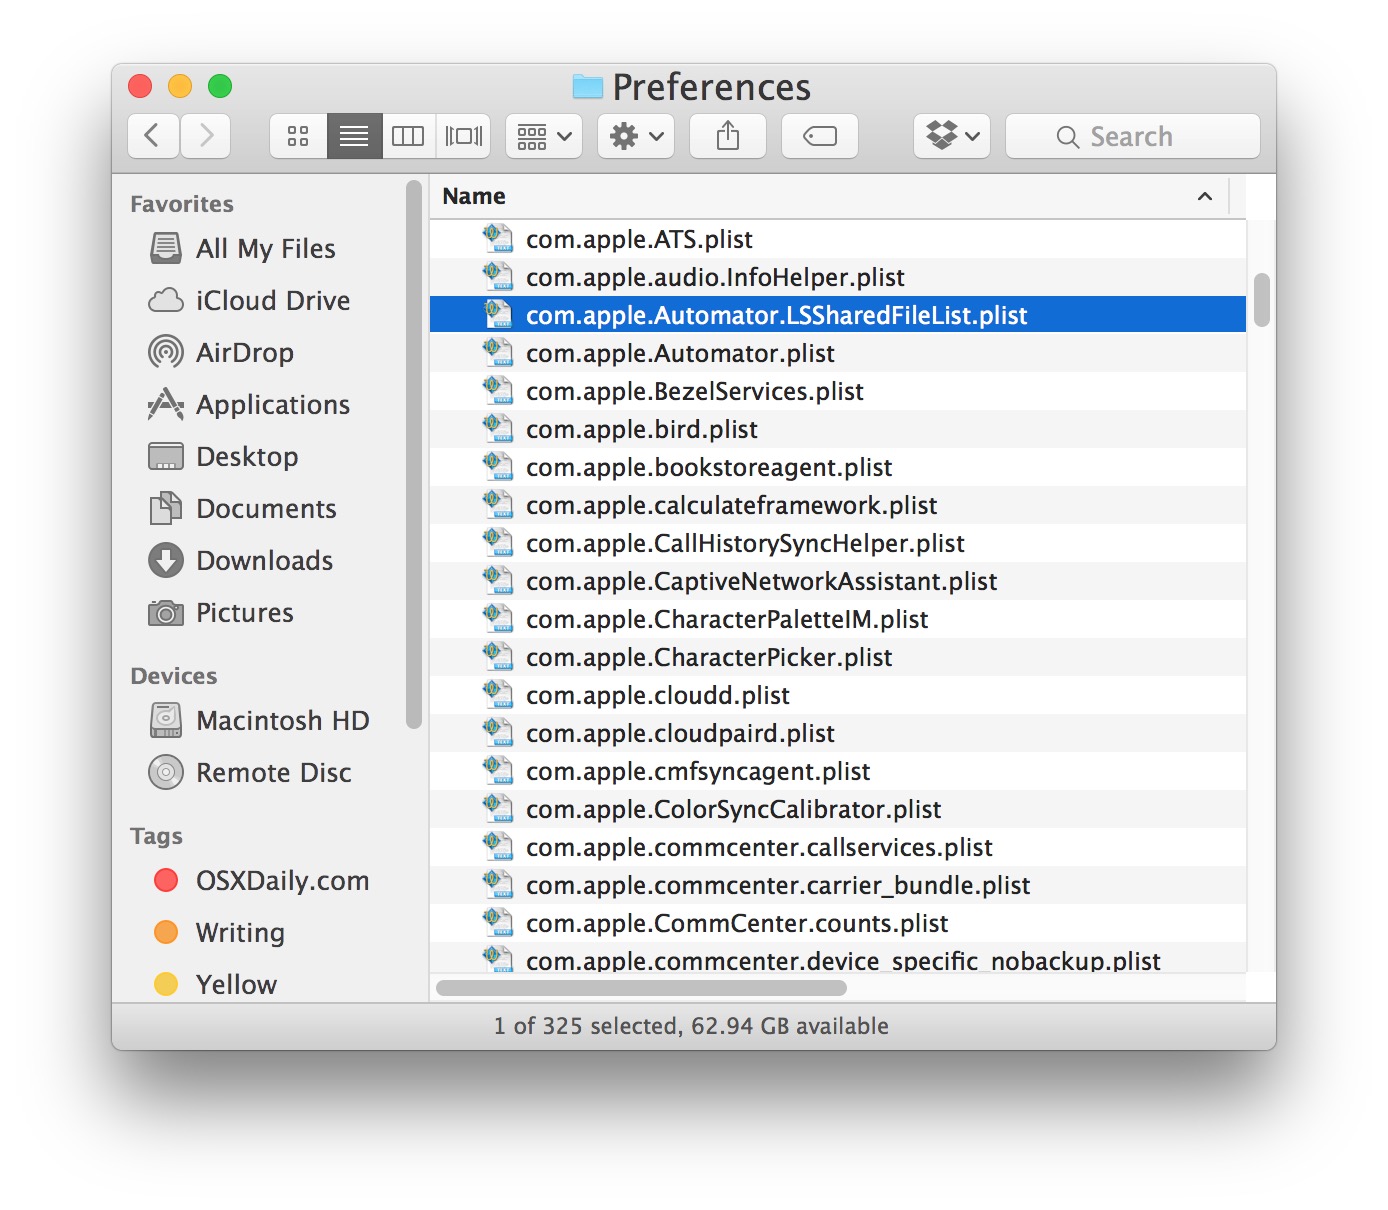 El tamaño de fuente pequeño es el predeterminado en Mac OS X Finder